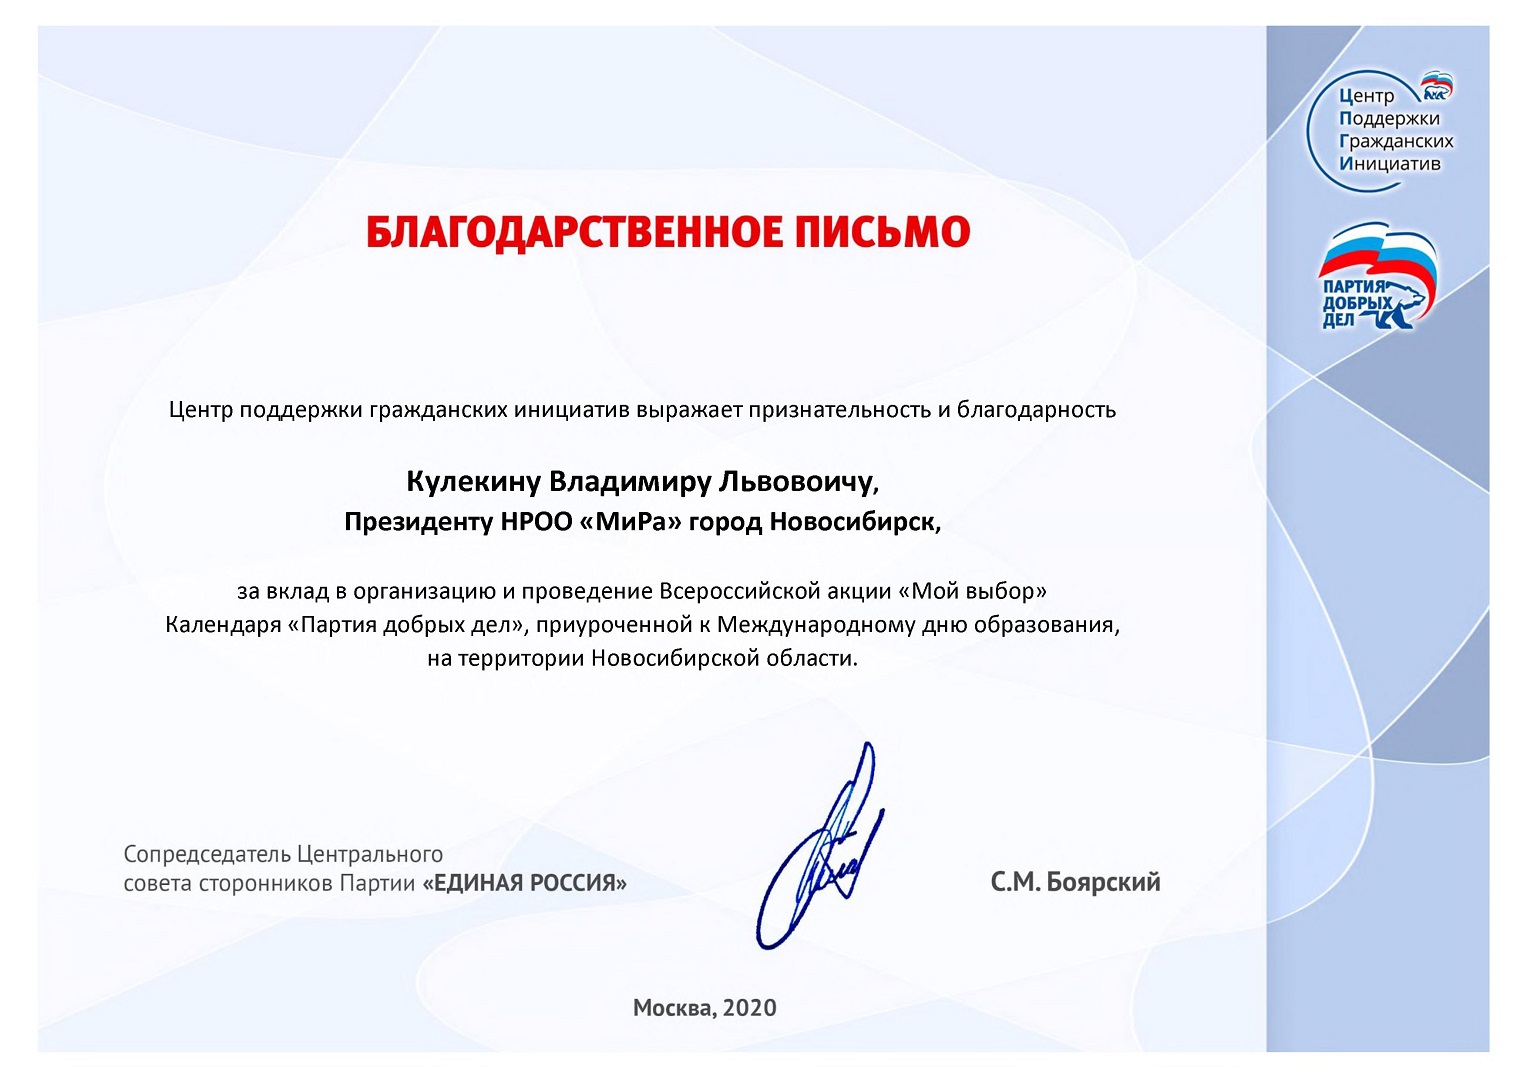 Владимир Кулекин награжден благодарственным письмом Центра поддержки гражданских инициатив